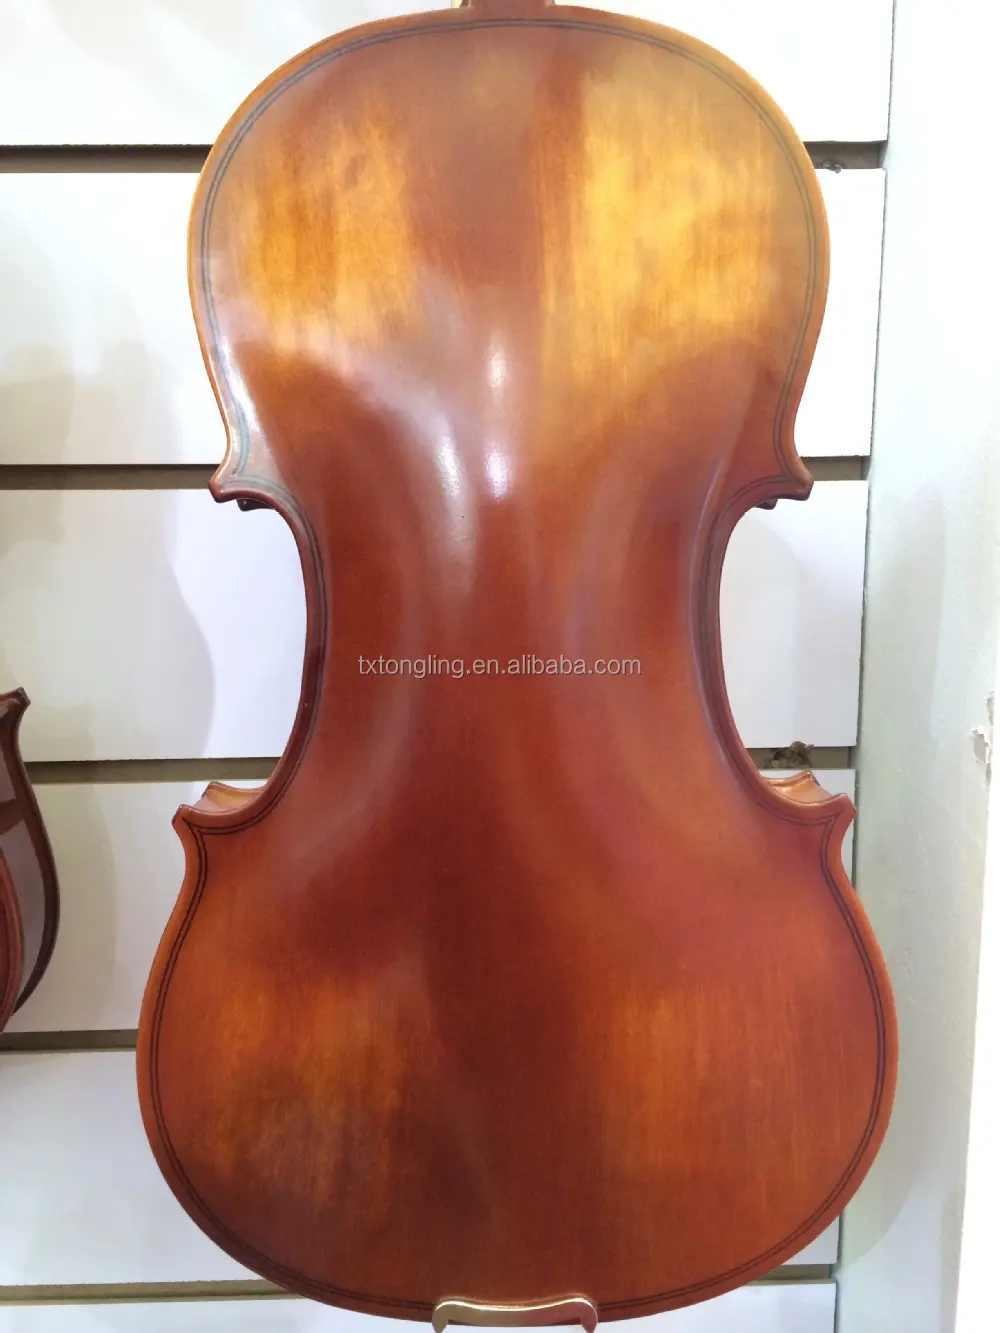 Violines de madera contrachapada, precio barato, venta al por mayor, china